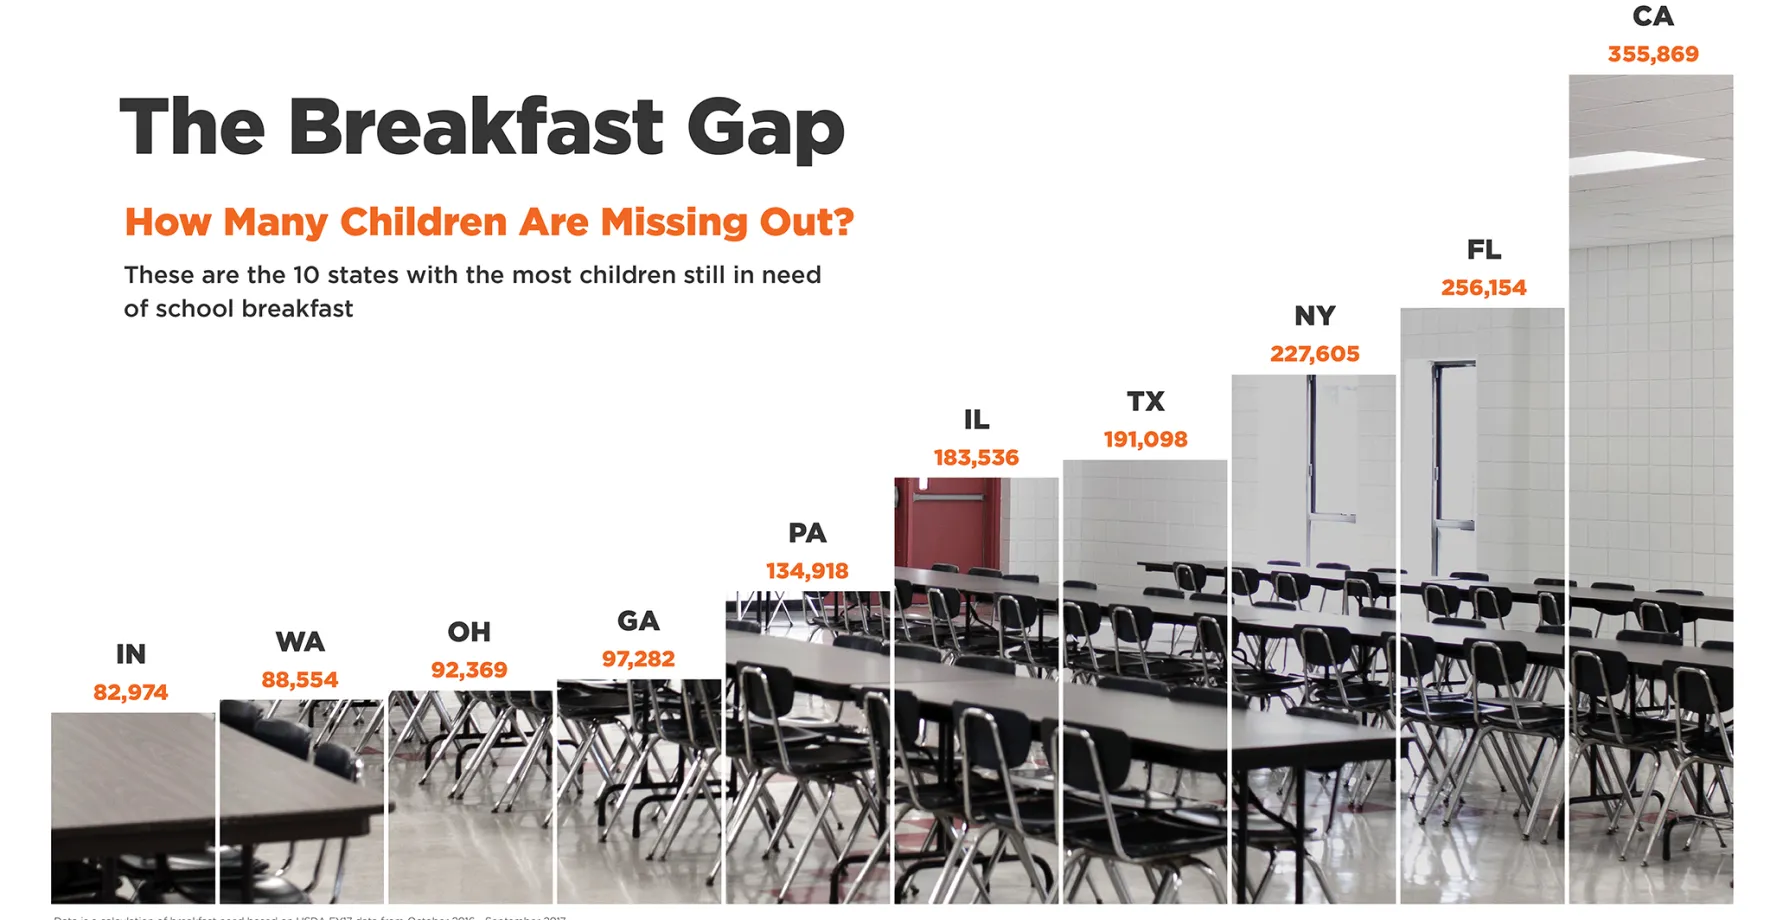 The breakfast gap